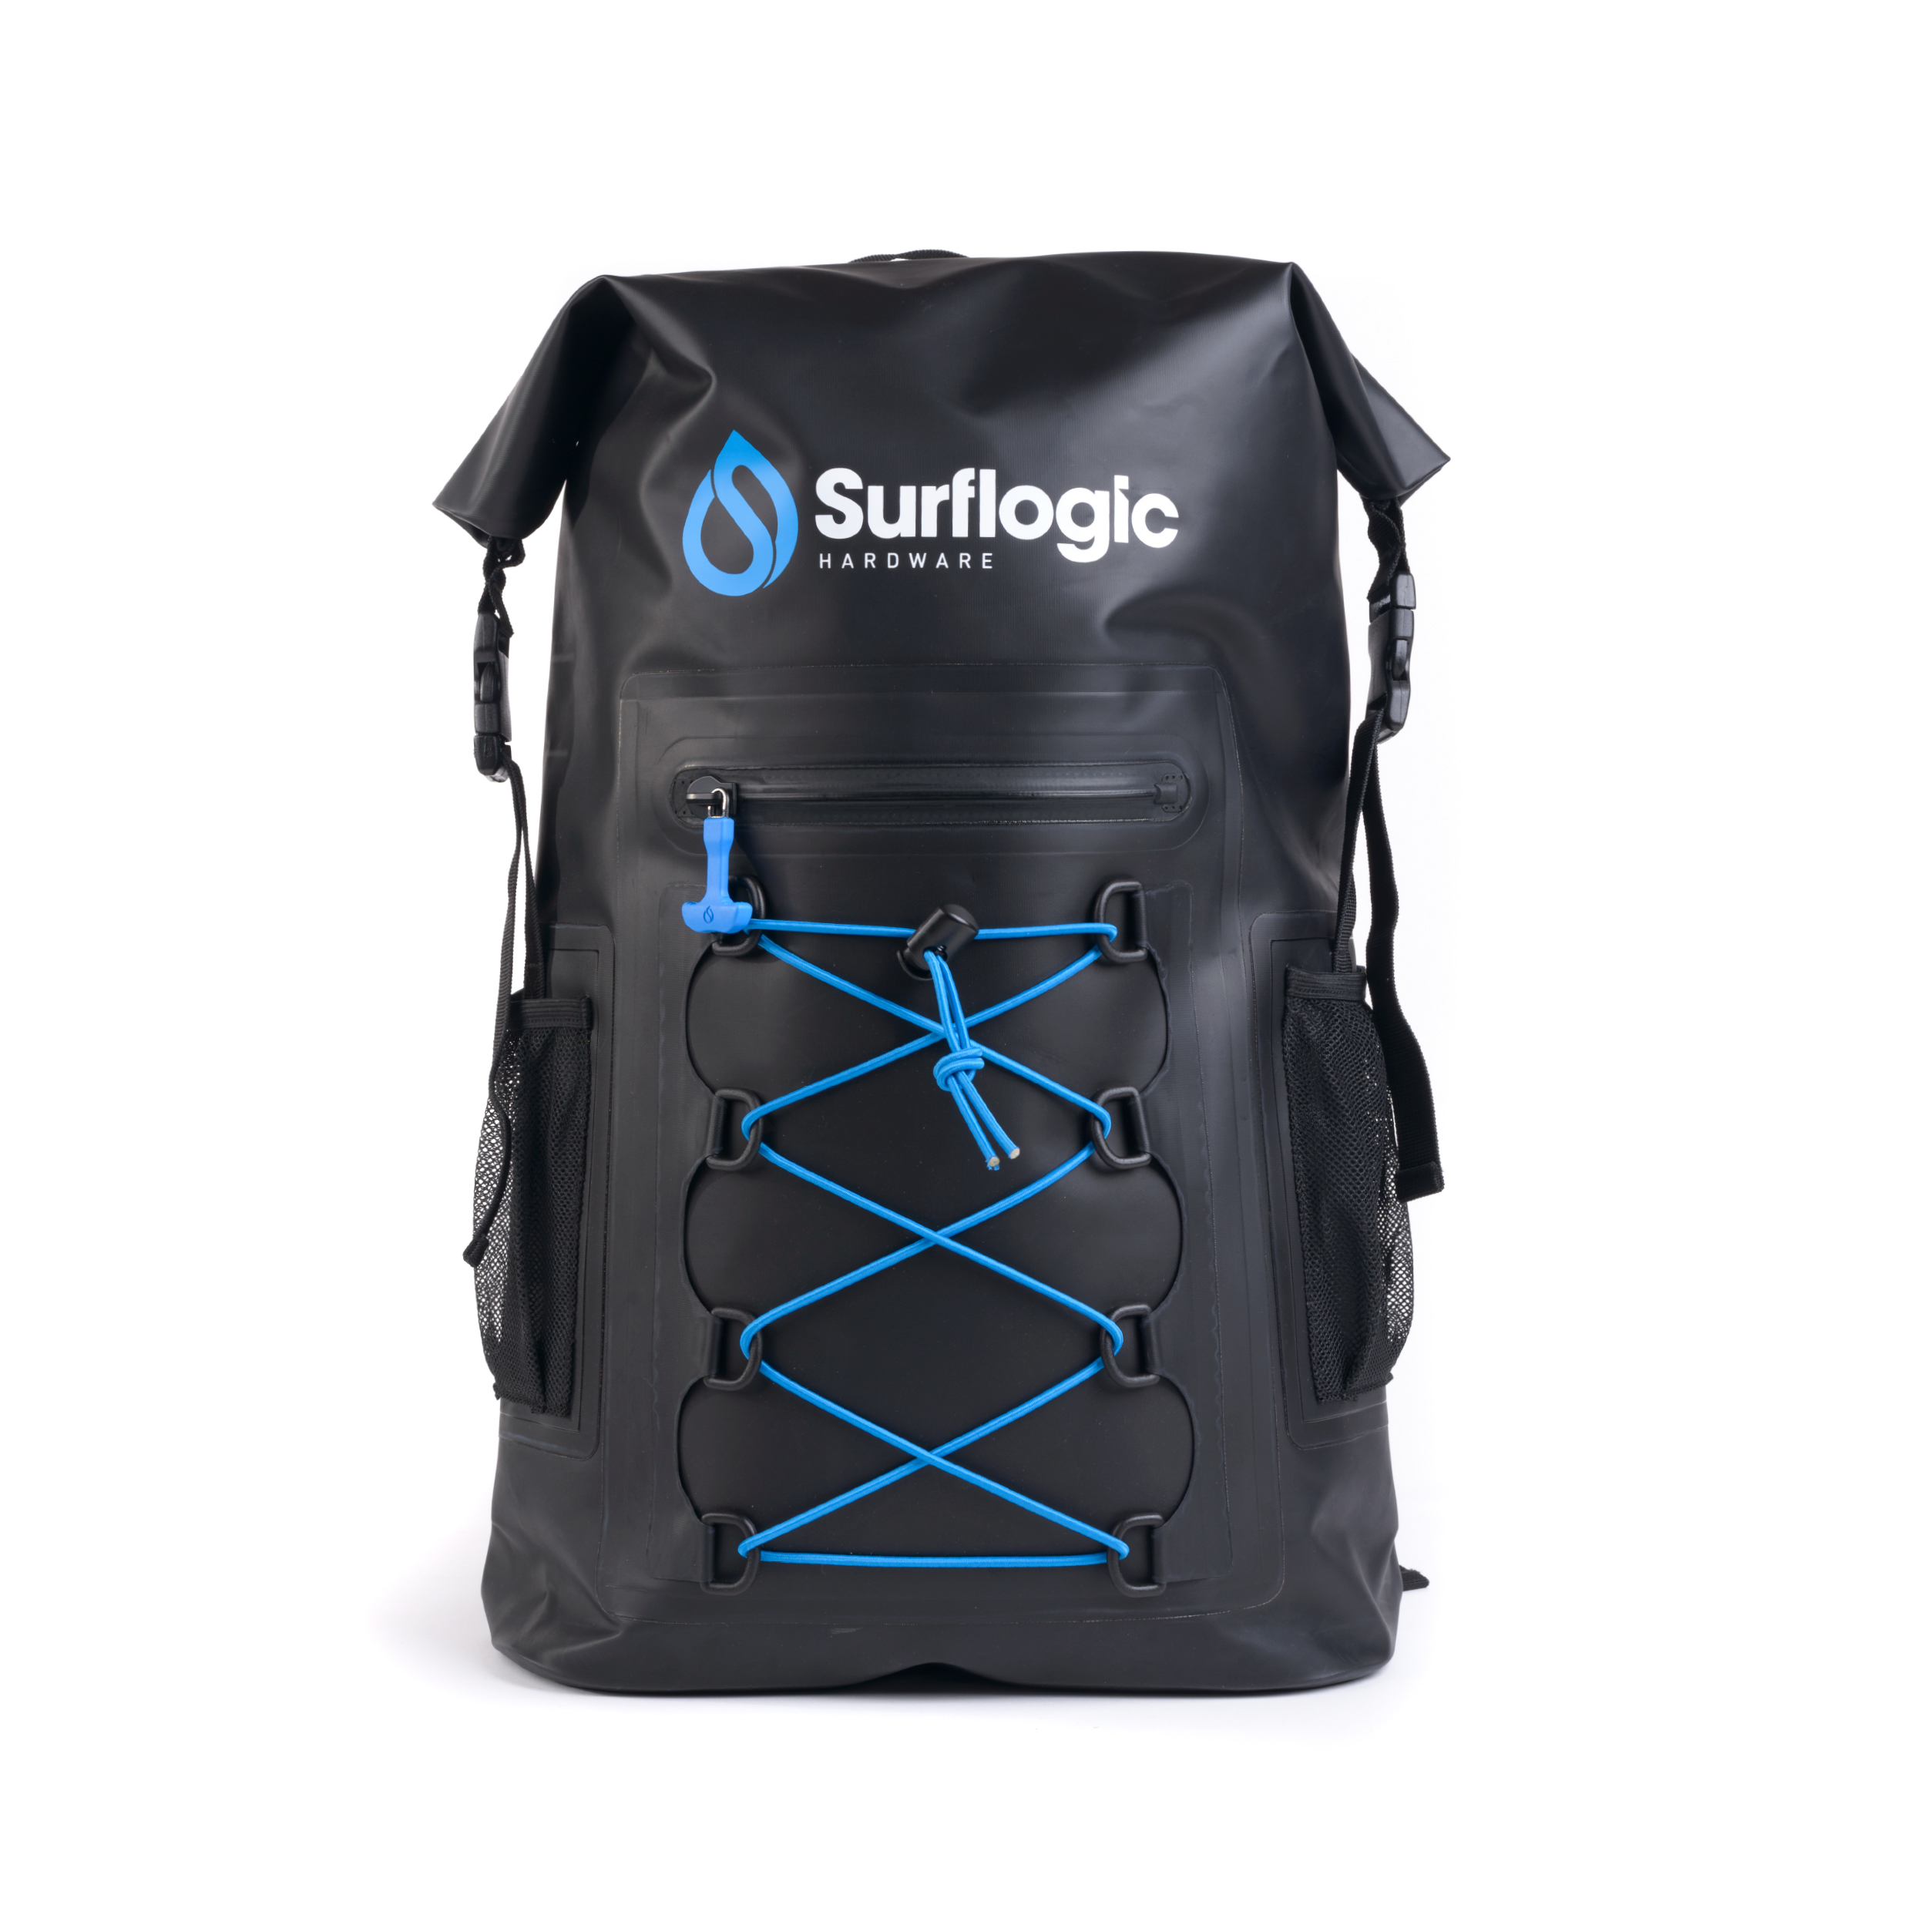 Prodry waterproof backpack 30L